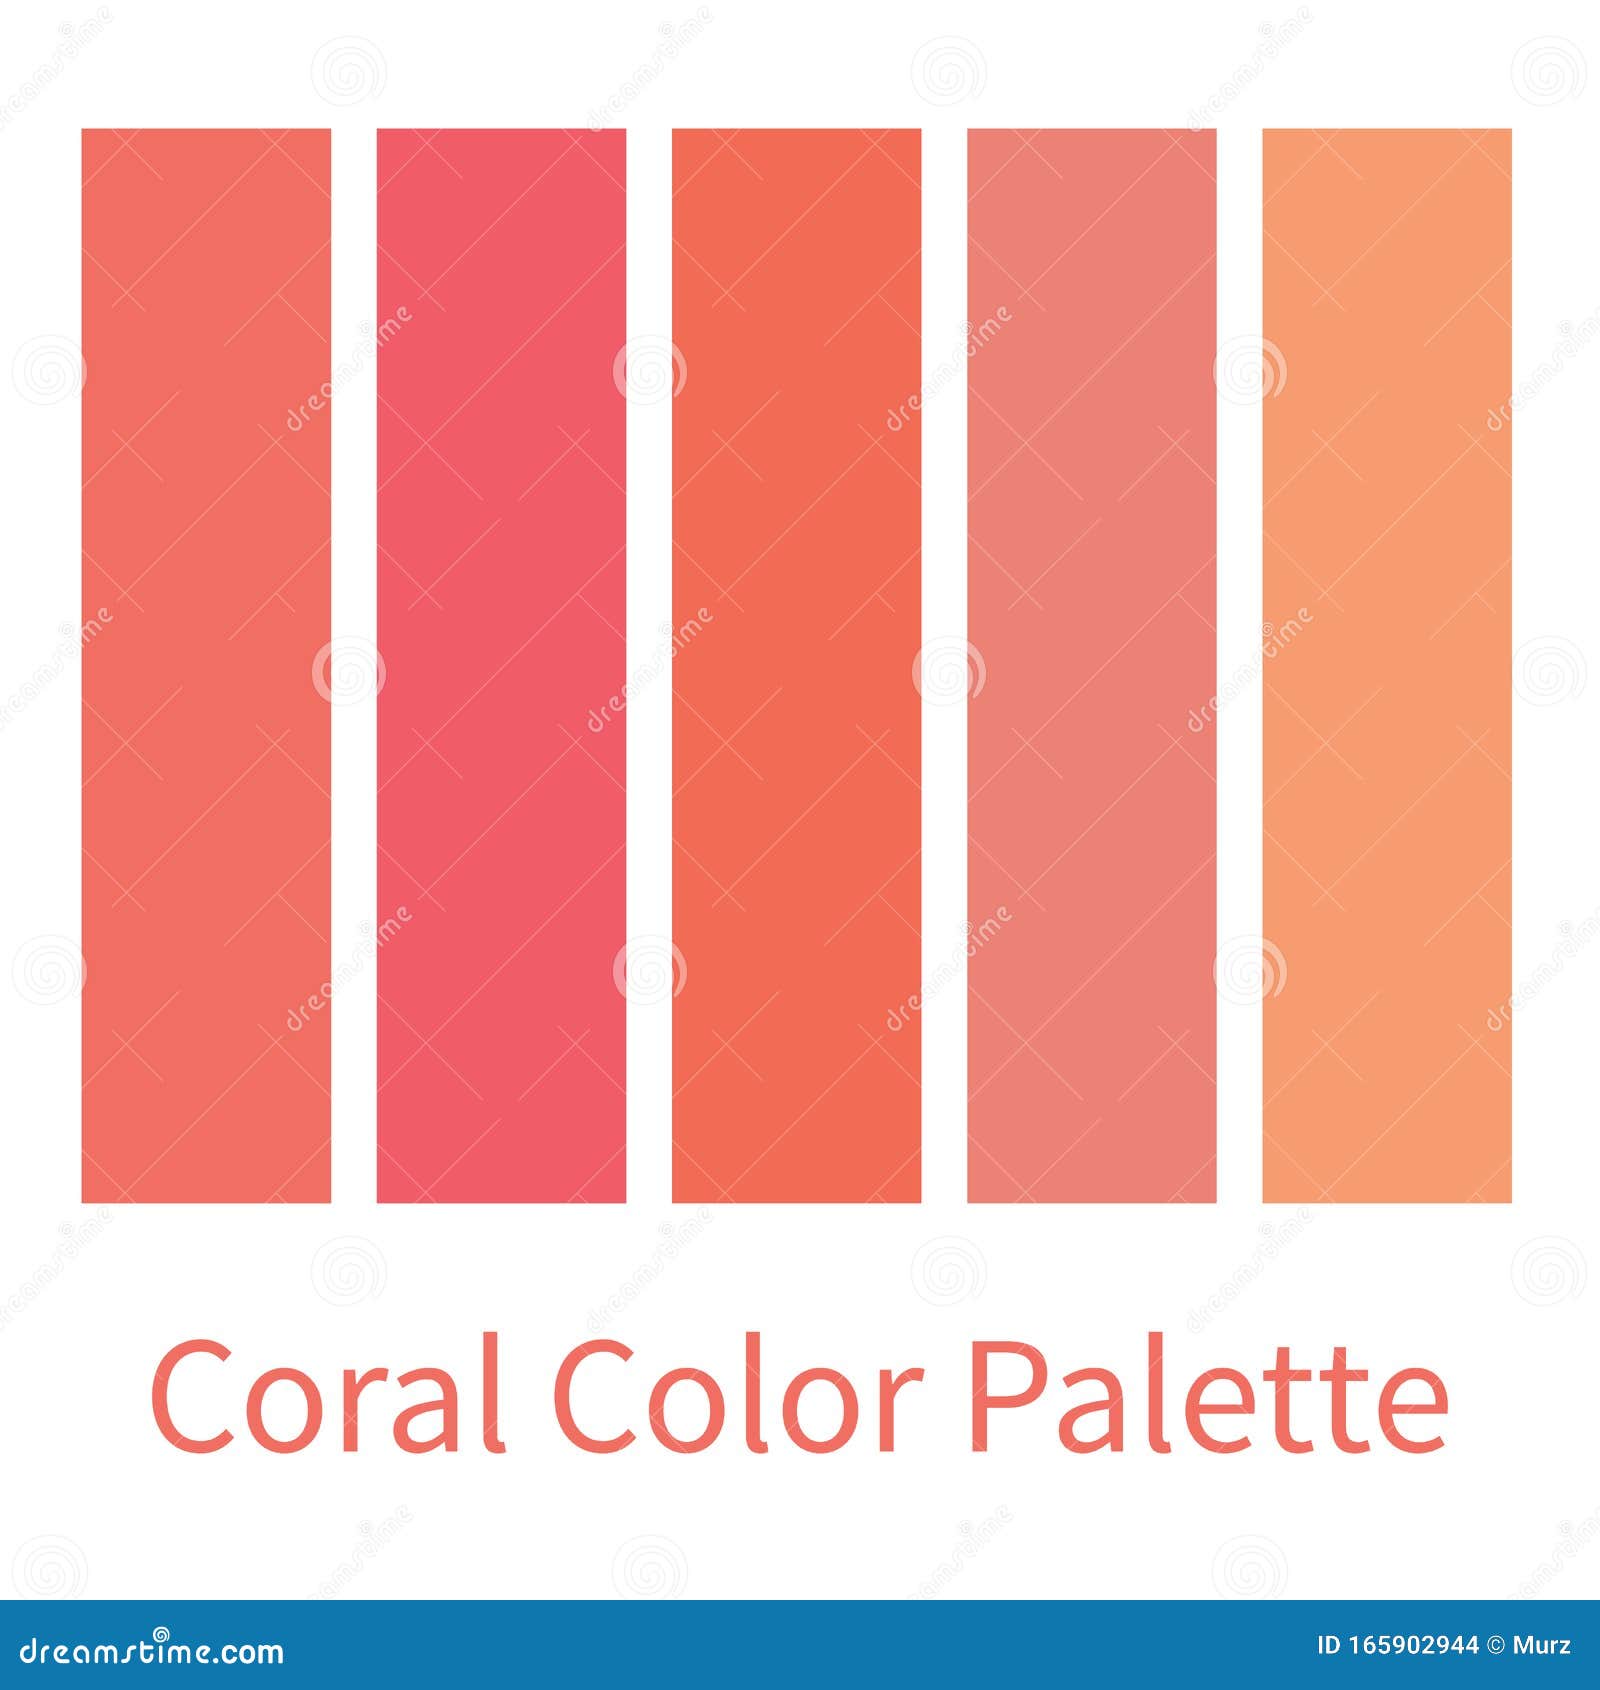 Coral color. Коралловый палитра. Оттенки кораллового цвета названия. Палитра коралловых цветов с названиями. Палитра цветов коралловый.